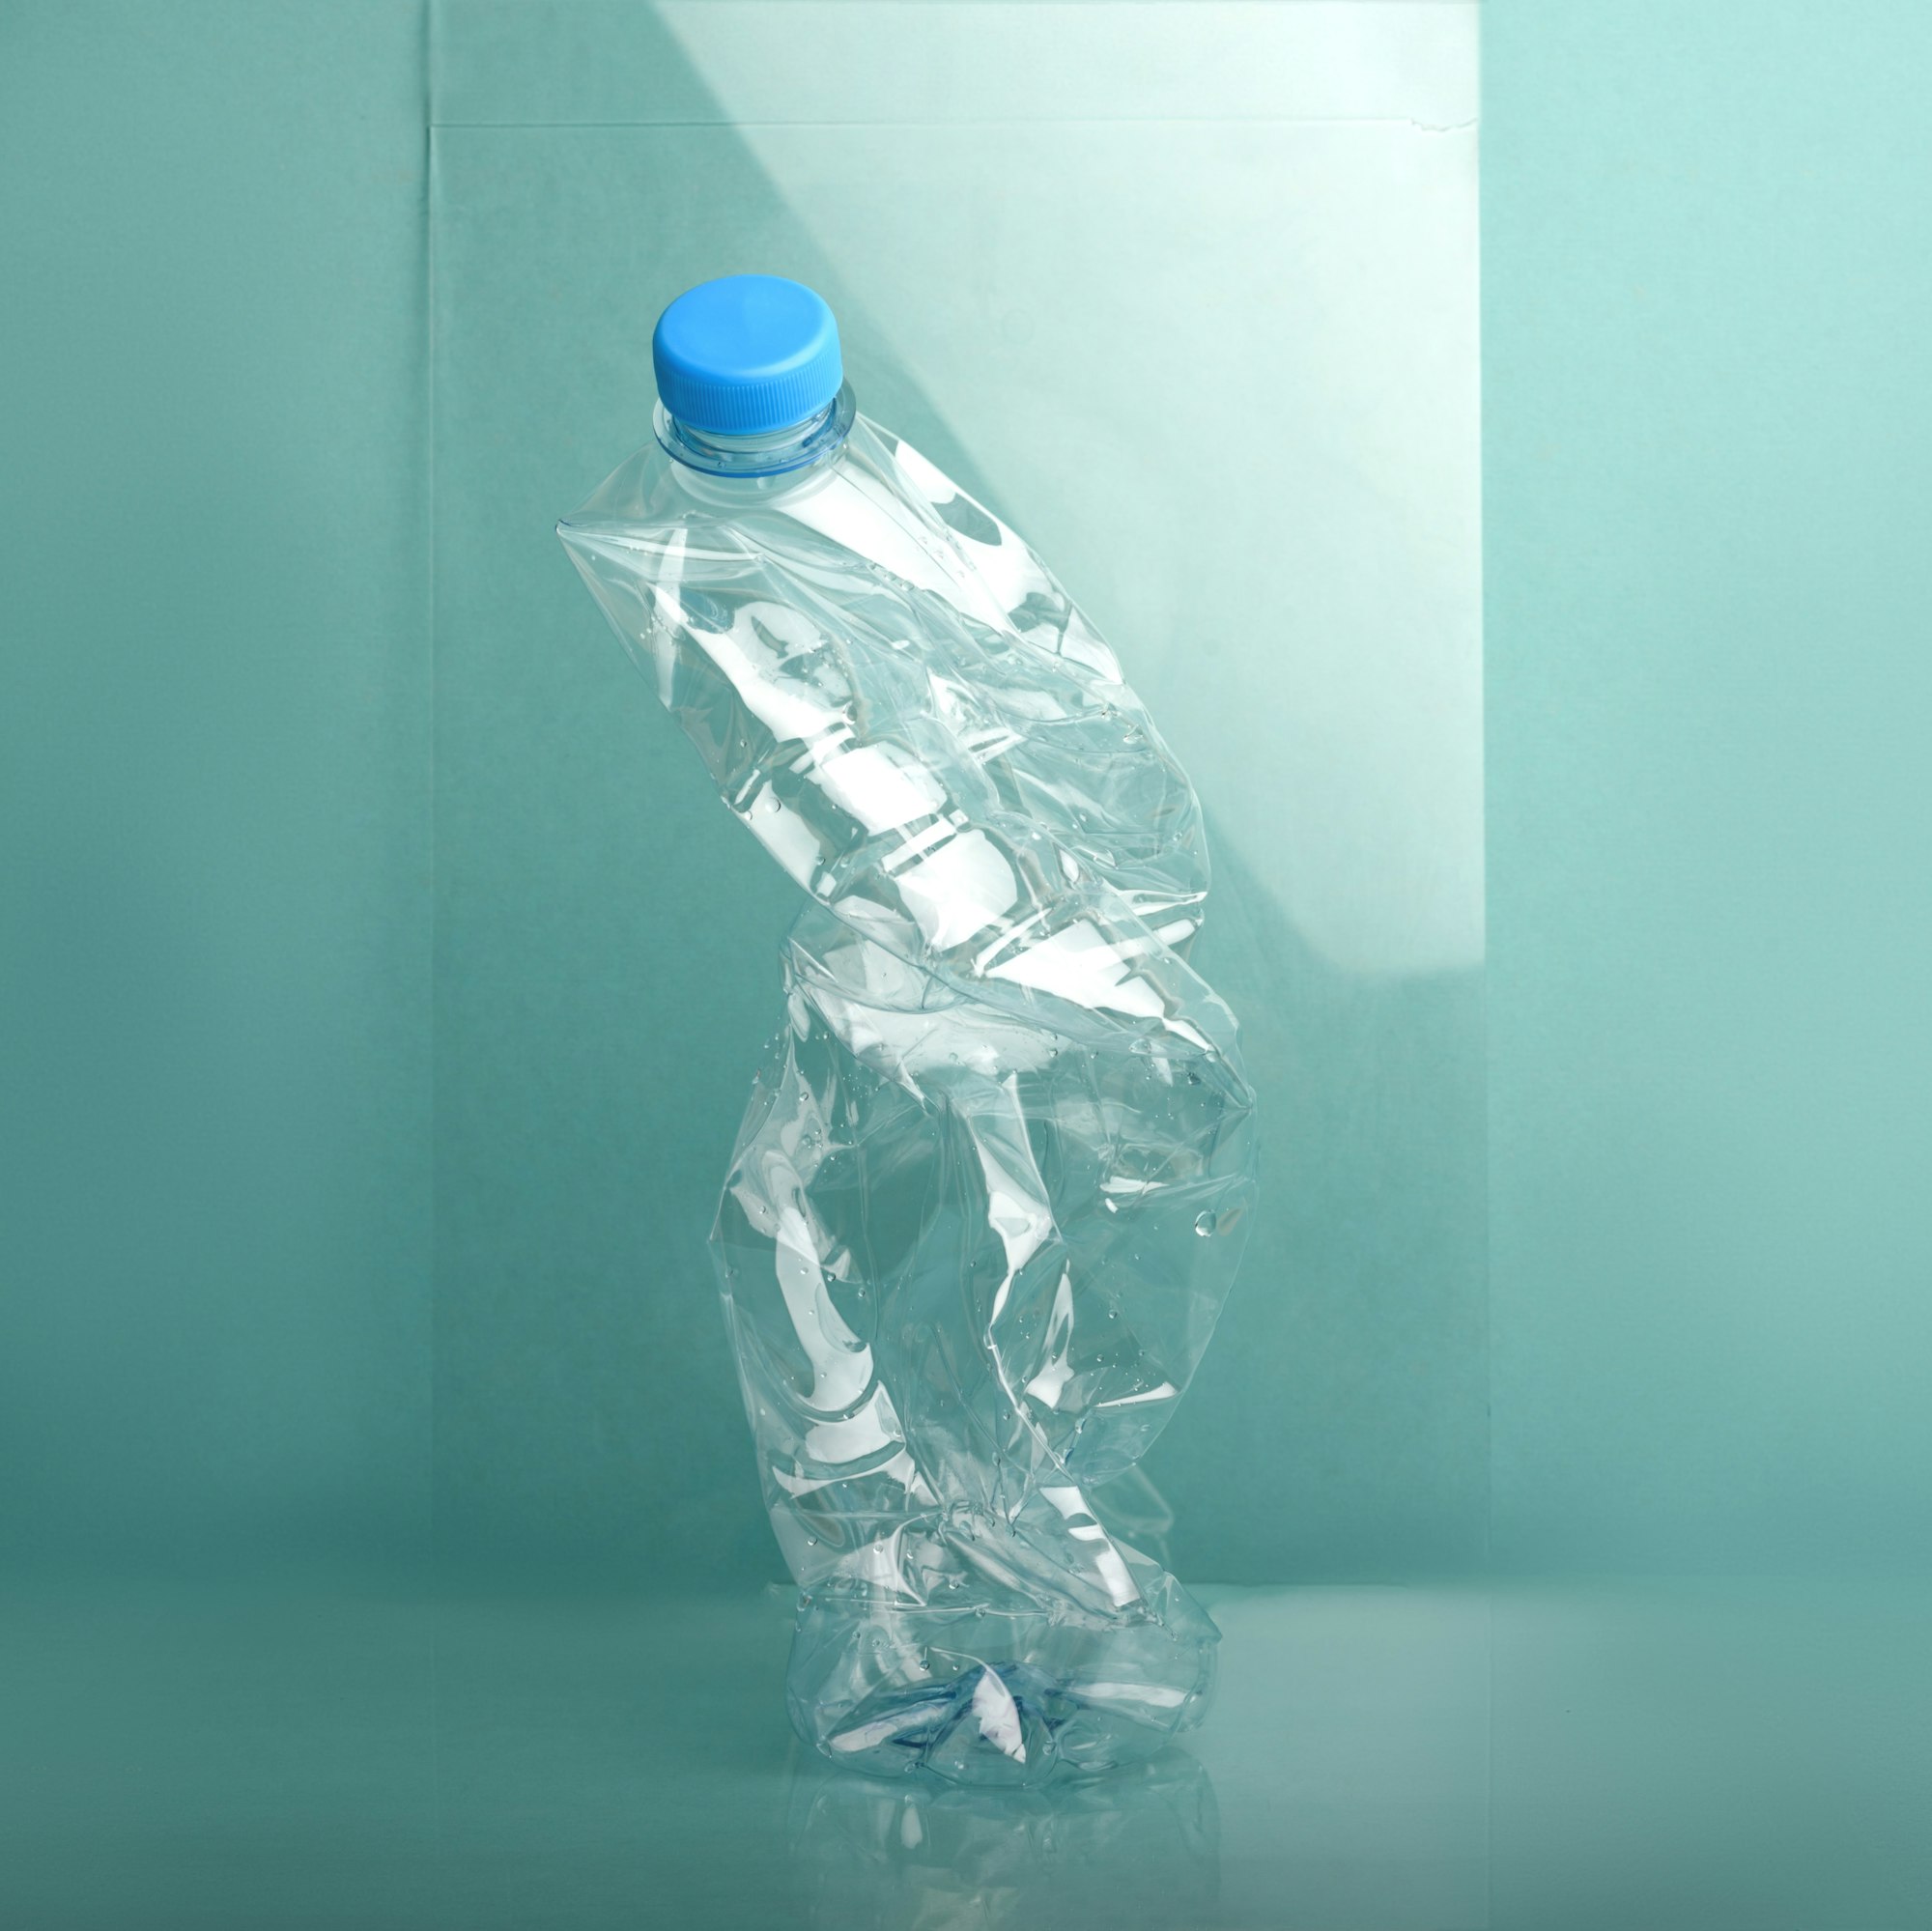 Used crushed plastic bottle on blue background.